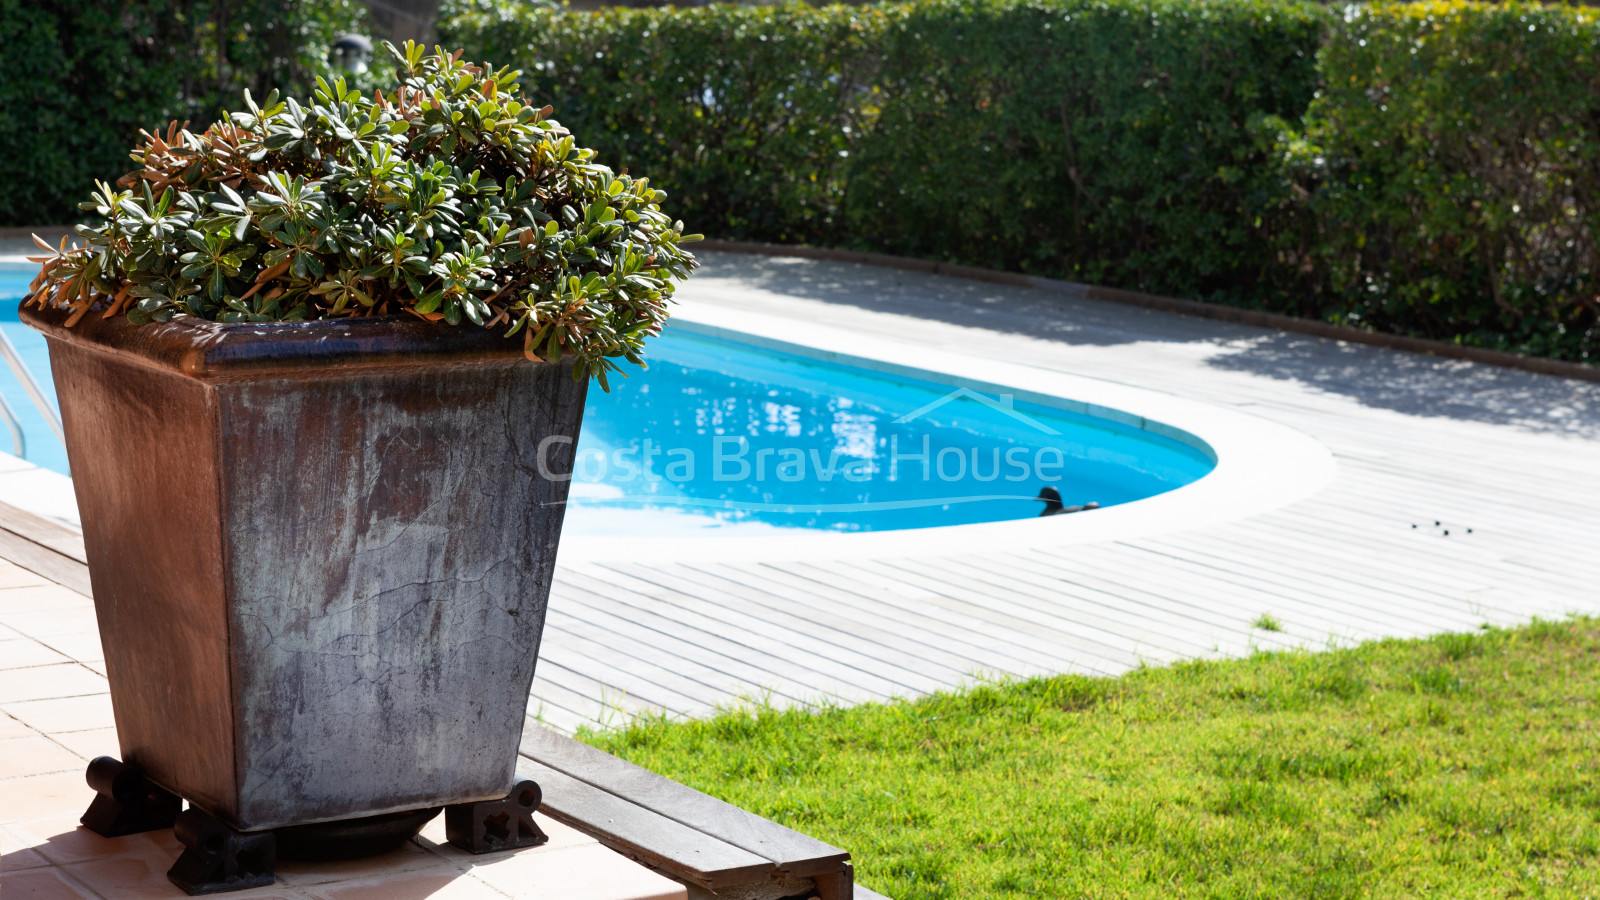 Casa de standing d'estil mediterrani en venda a Tamariu amb molt terreny i jardí amb piscina